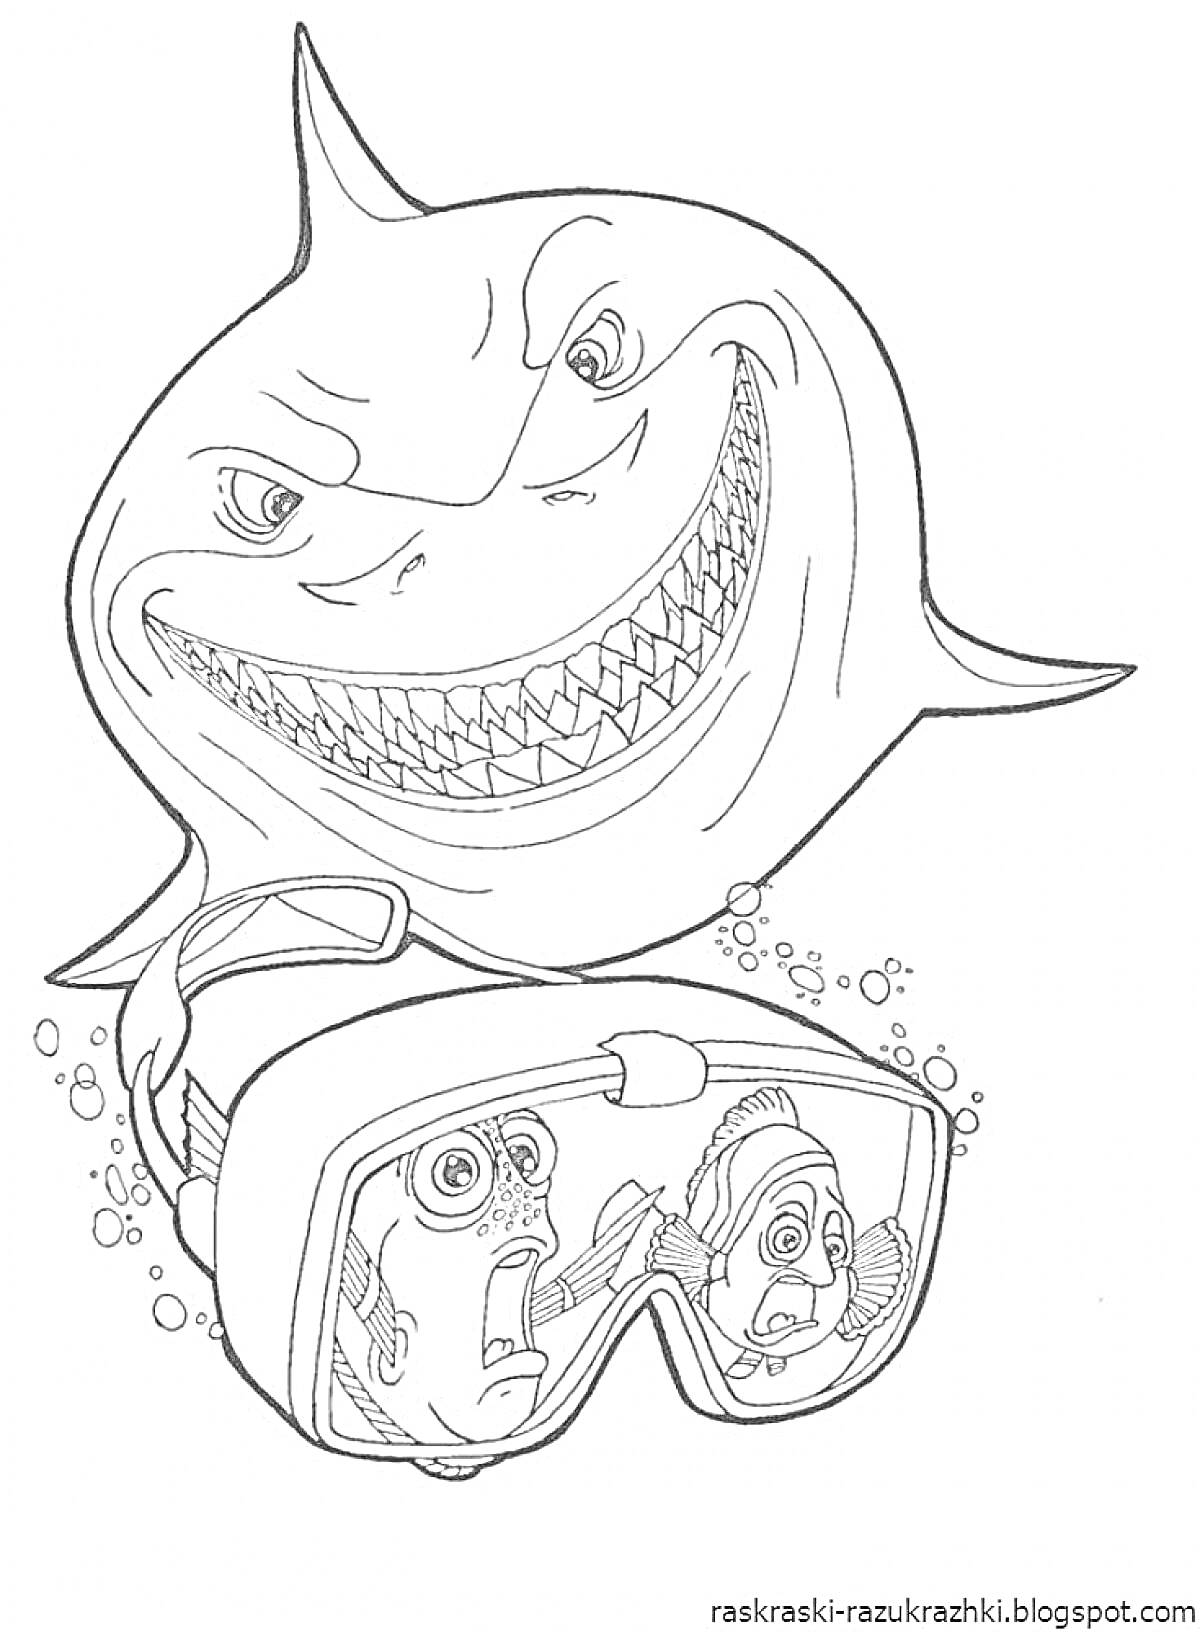 Раскраска Акула с маской для подводного плавания и испуганными рыбками внутри